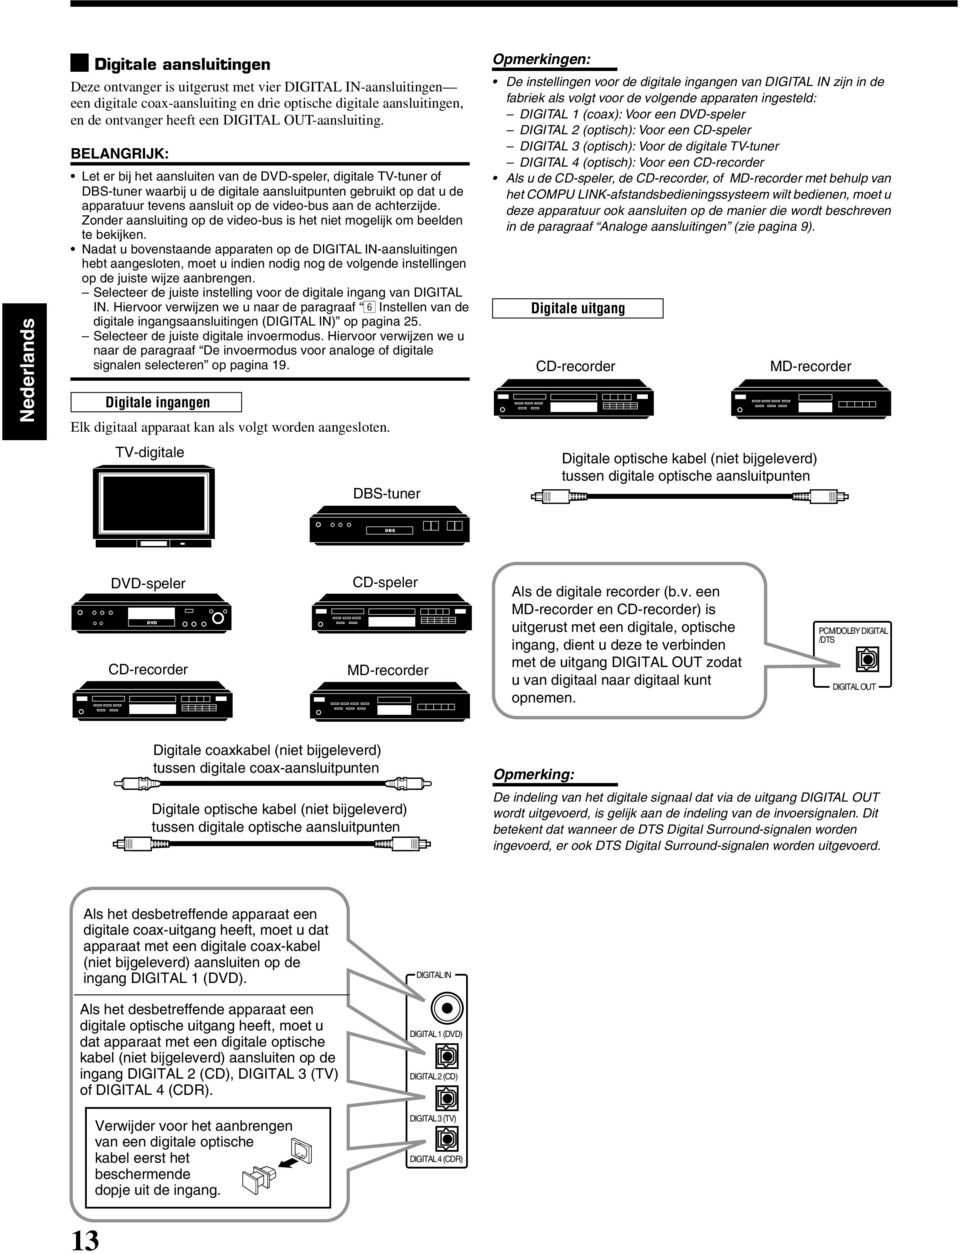 BELANGRIJK: Let er bij het aansluiten van de -speler, digitale TV-tuner of DBS-tuner waarbij u de digitale aansluitpunten gebruikt op dat u de apparatuur tevens aansluit op de video-bus aan de